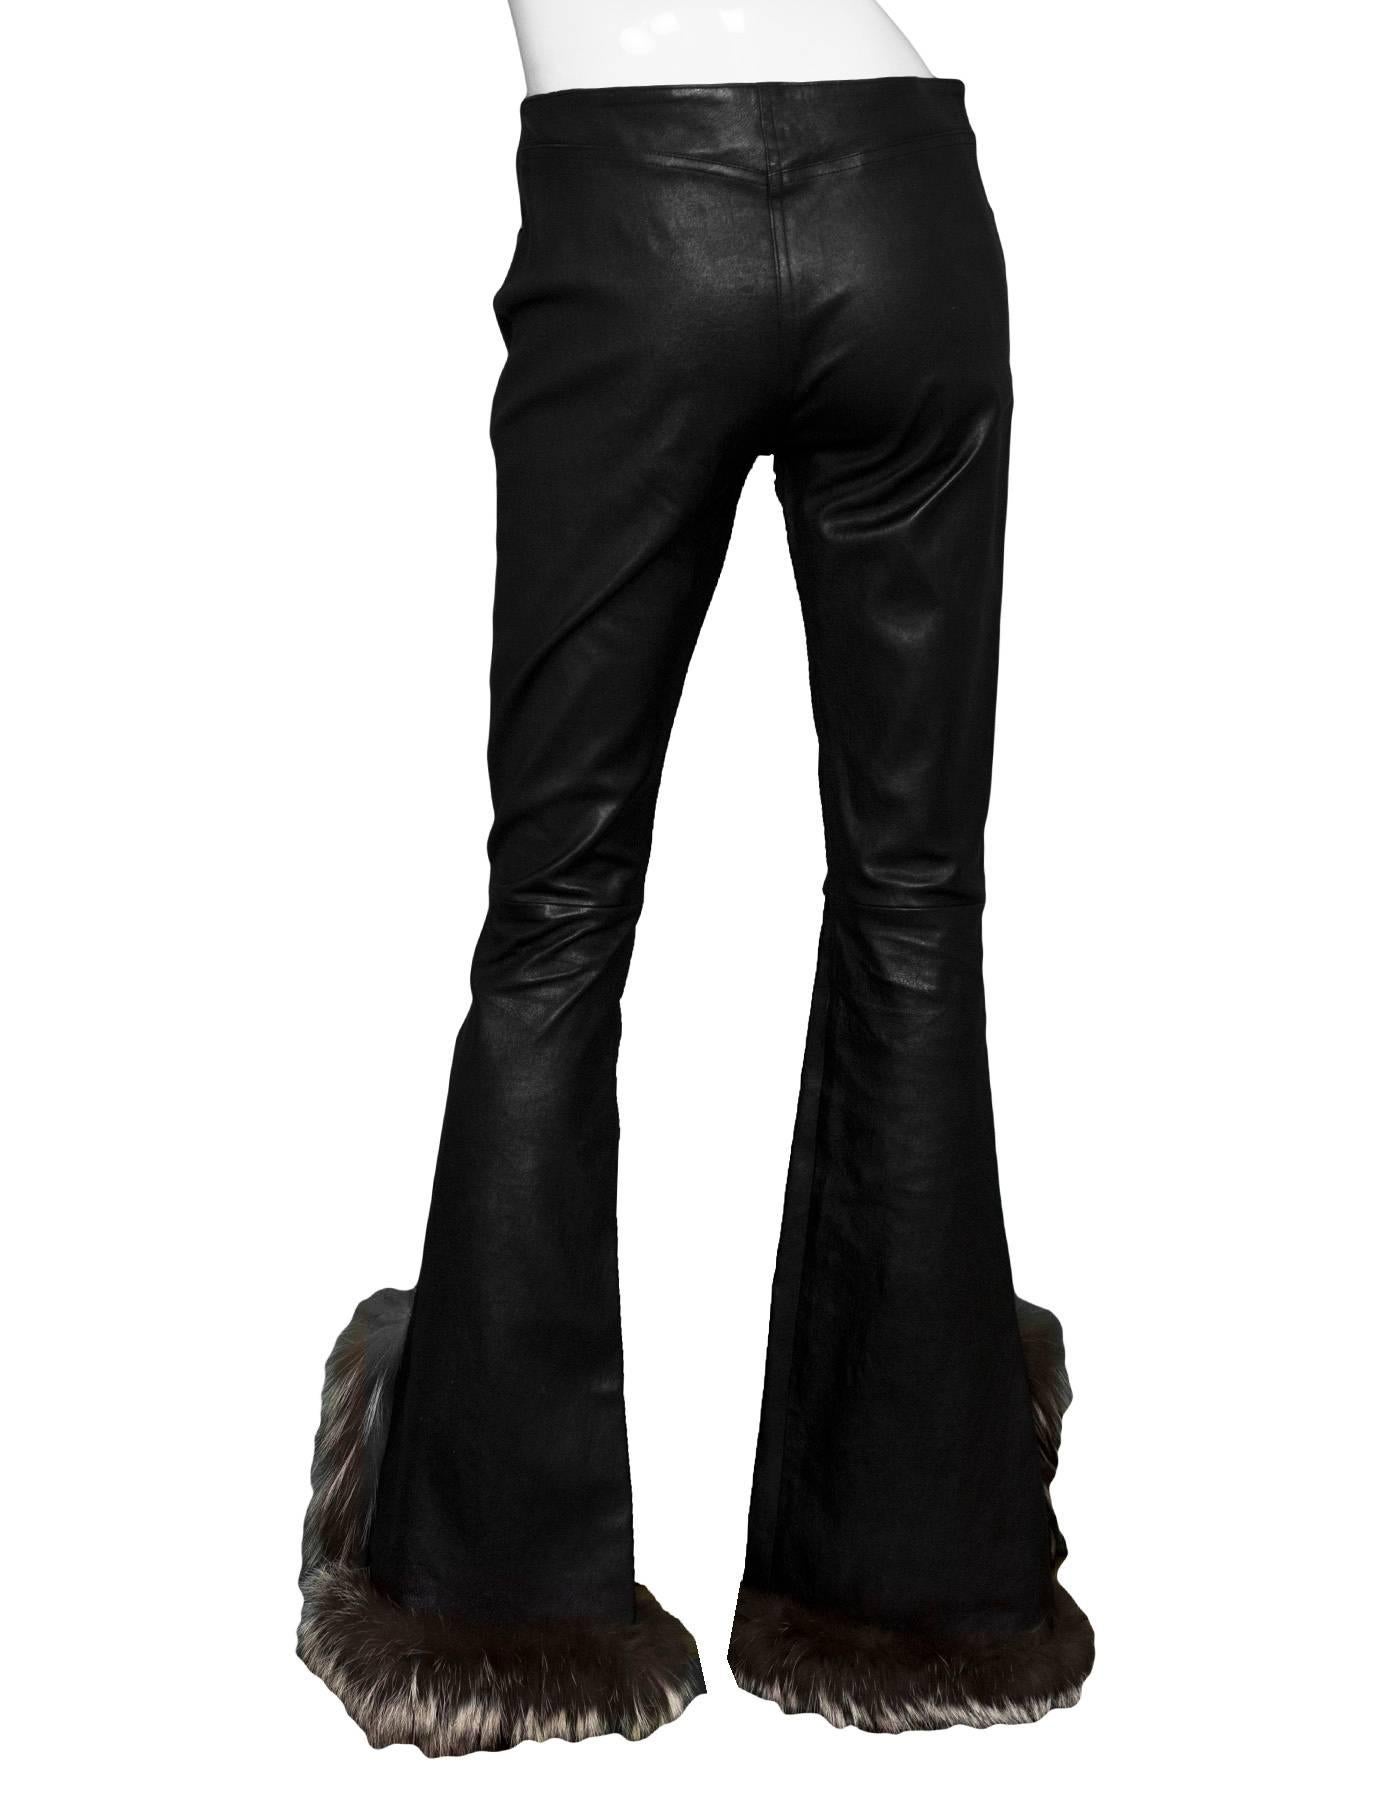 Women's Jean Claude Jitrois Black Leather & Fur Pants Sz FR40